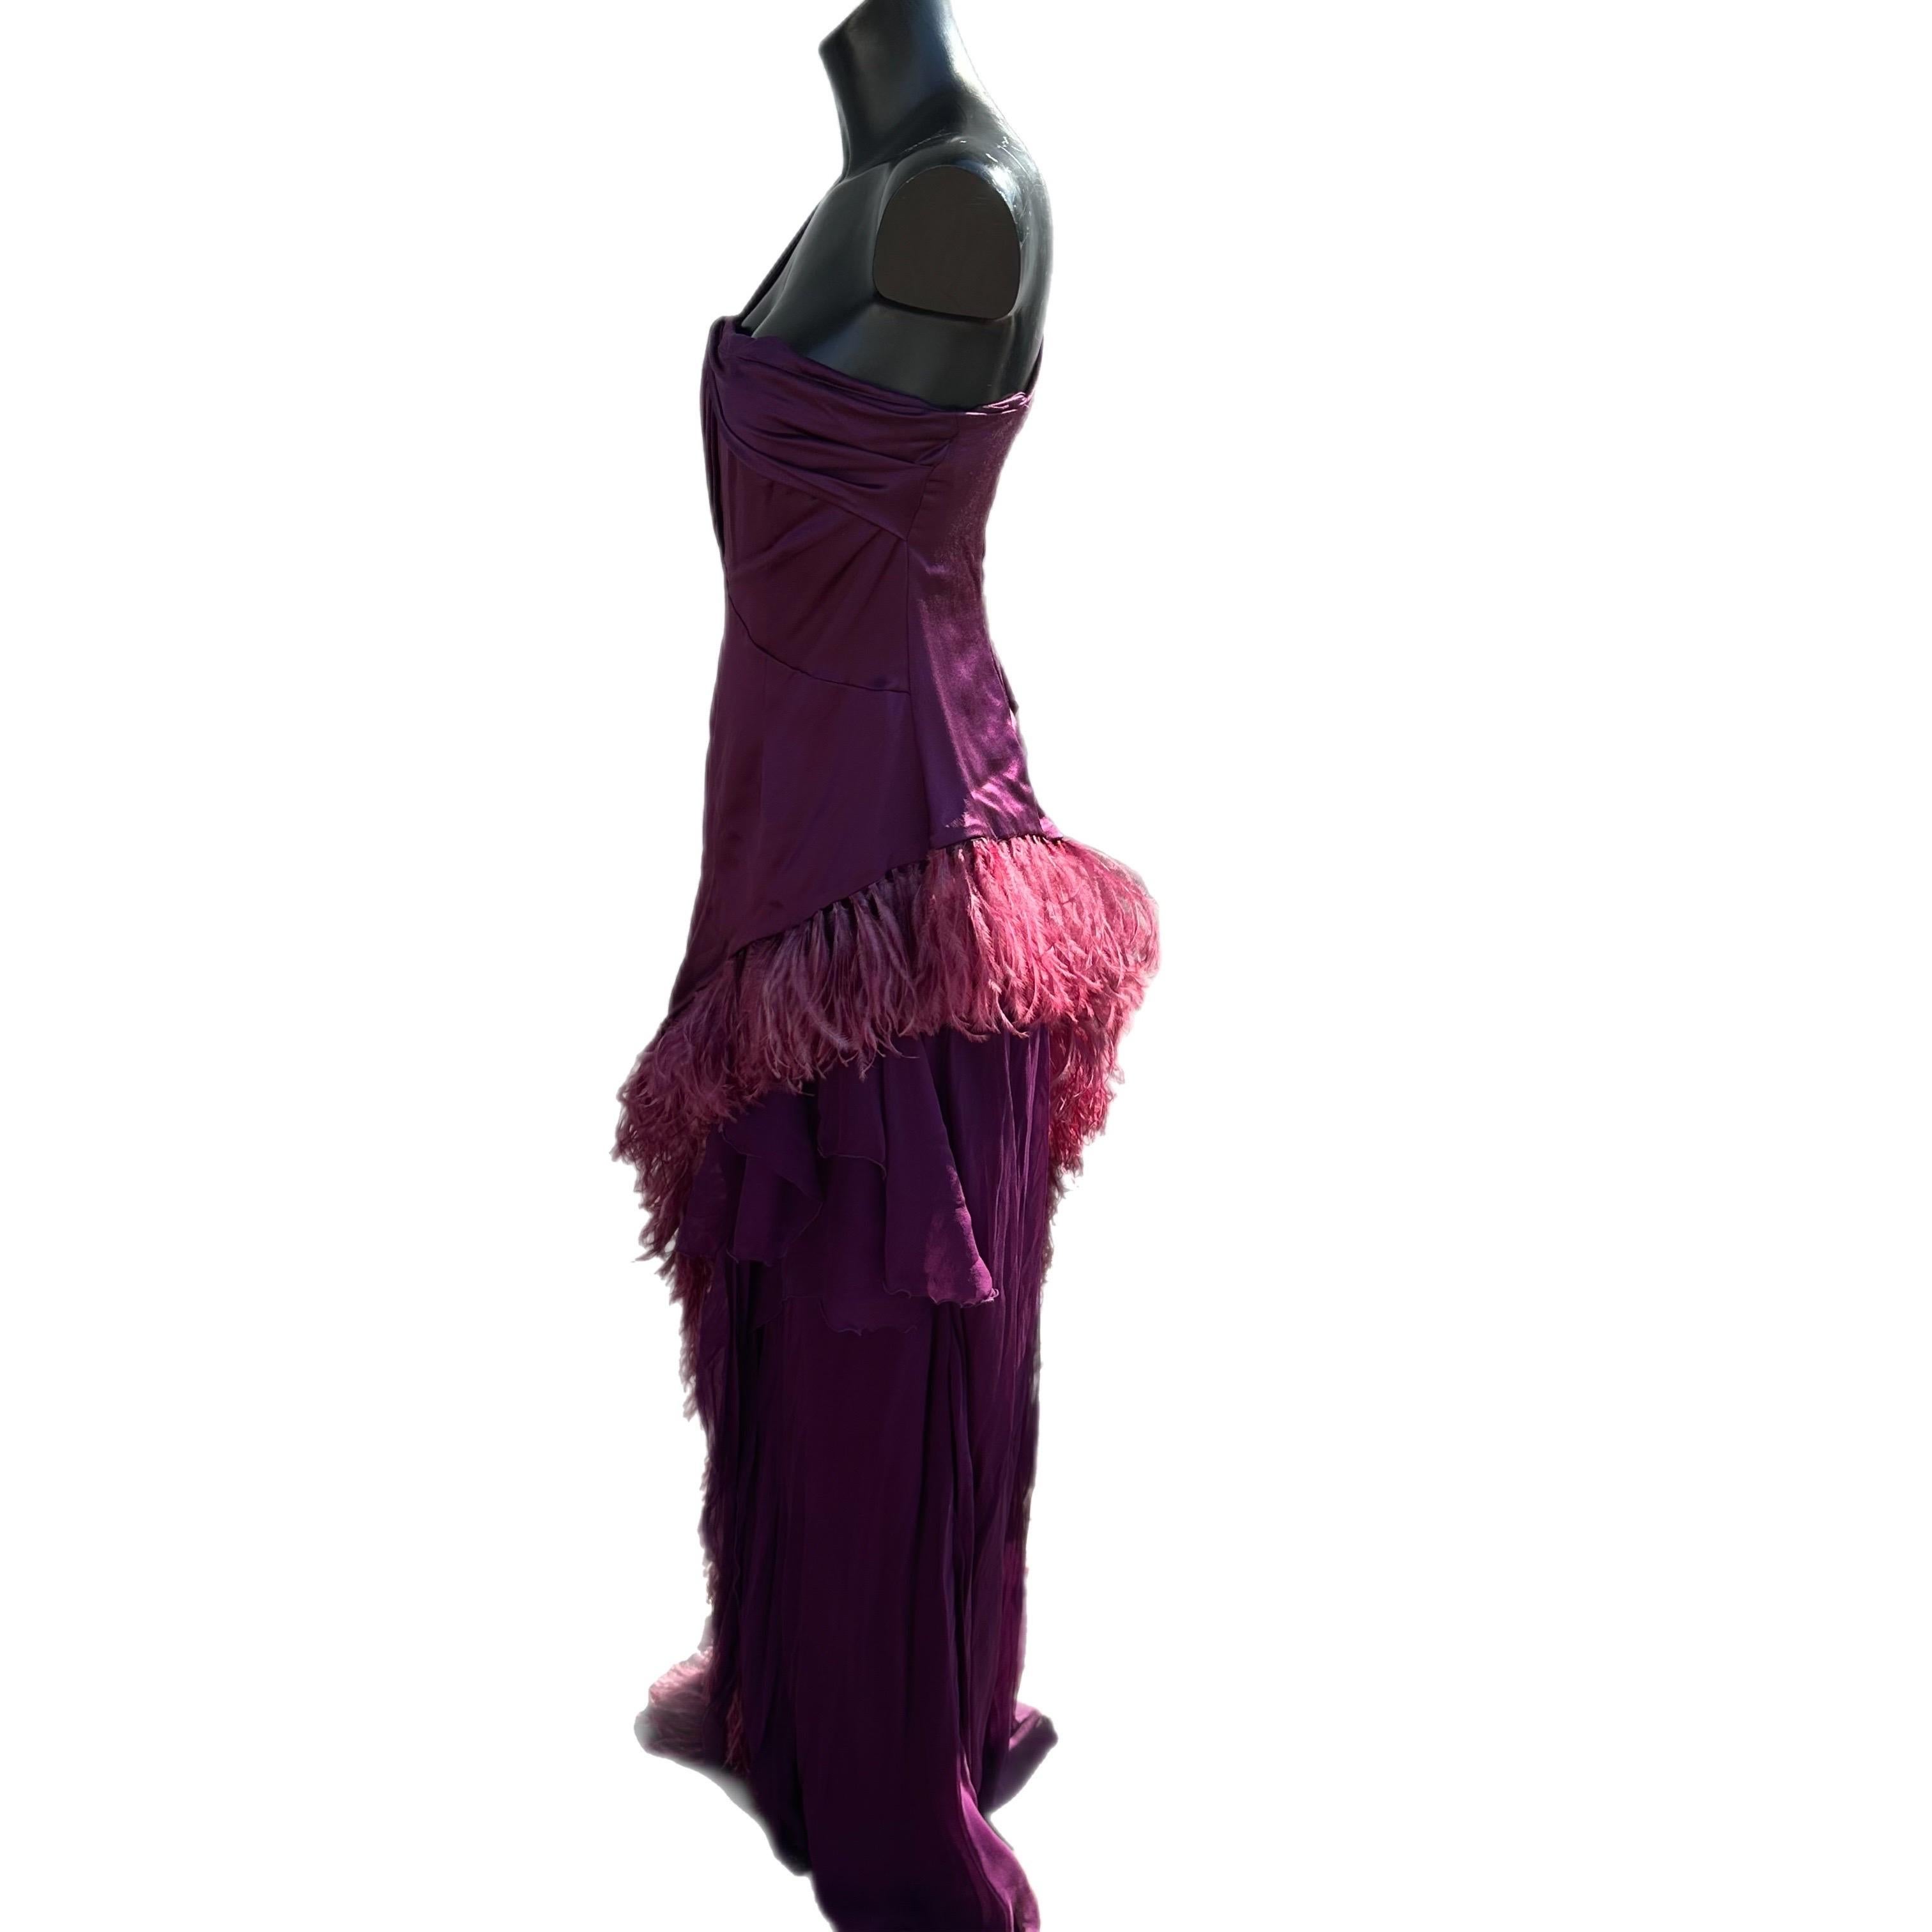 Meraviglioso abito di ricerca vintage anni 50, colo viola
la sua coda leggera rende fluido l'abito che è contornato da pregiate piume.
La parte superiore a bustino è completata da una fascia trasversale ed una bretella della stessa dimensione